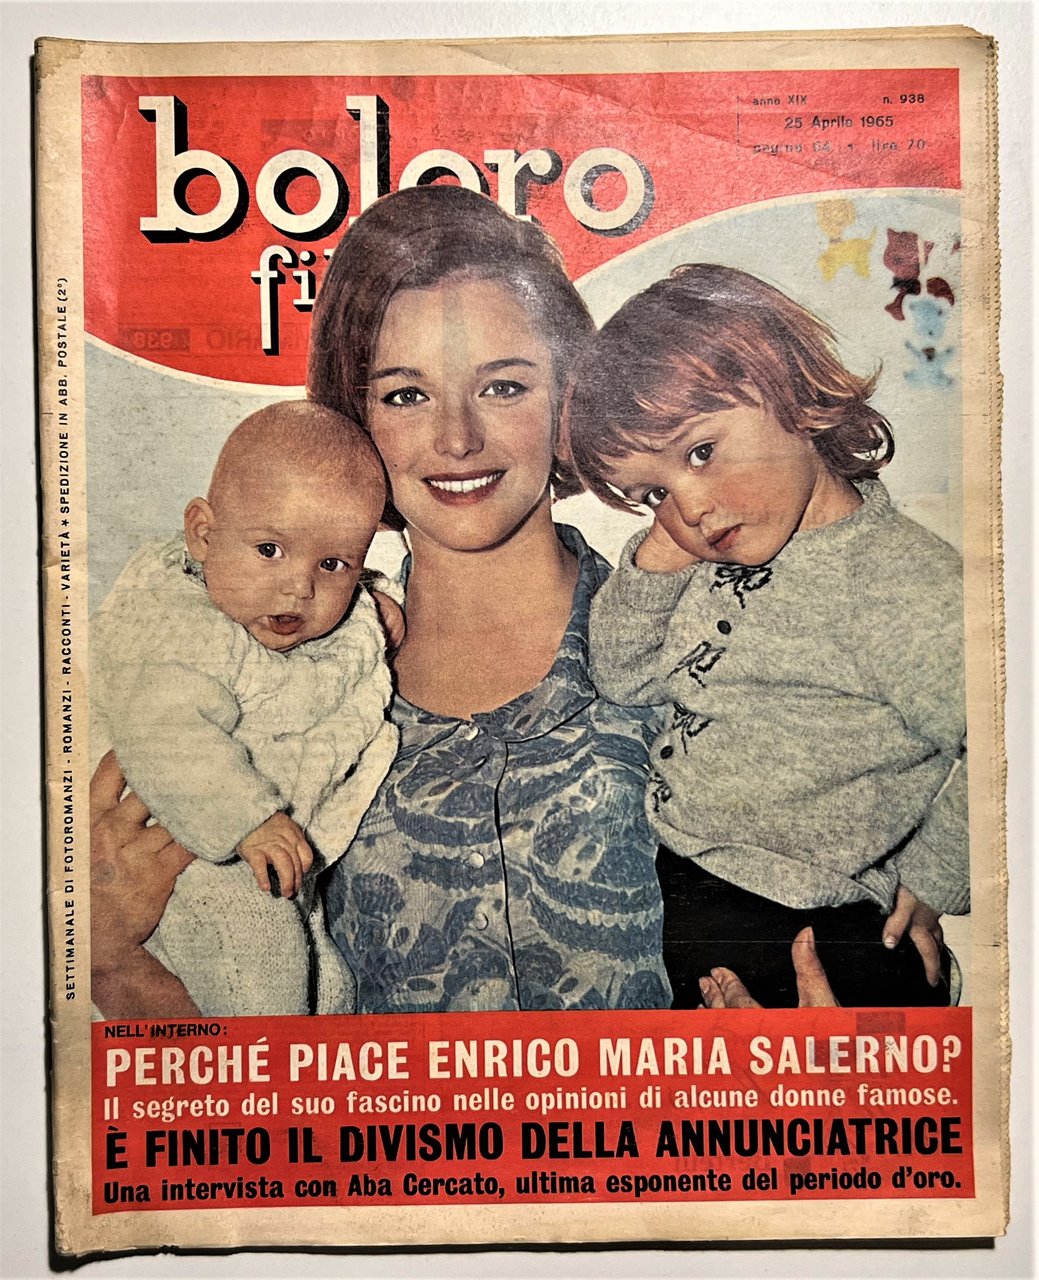 Settimanale di Fotoromanzi - Bolero Film N. 938 - 1965 …